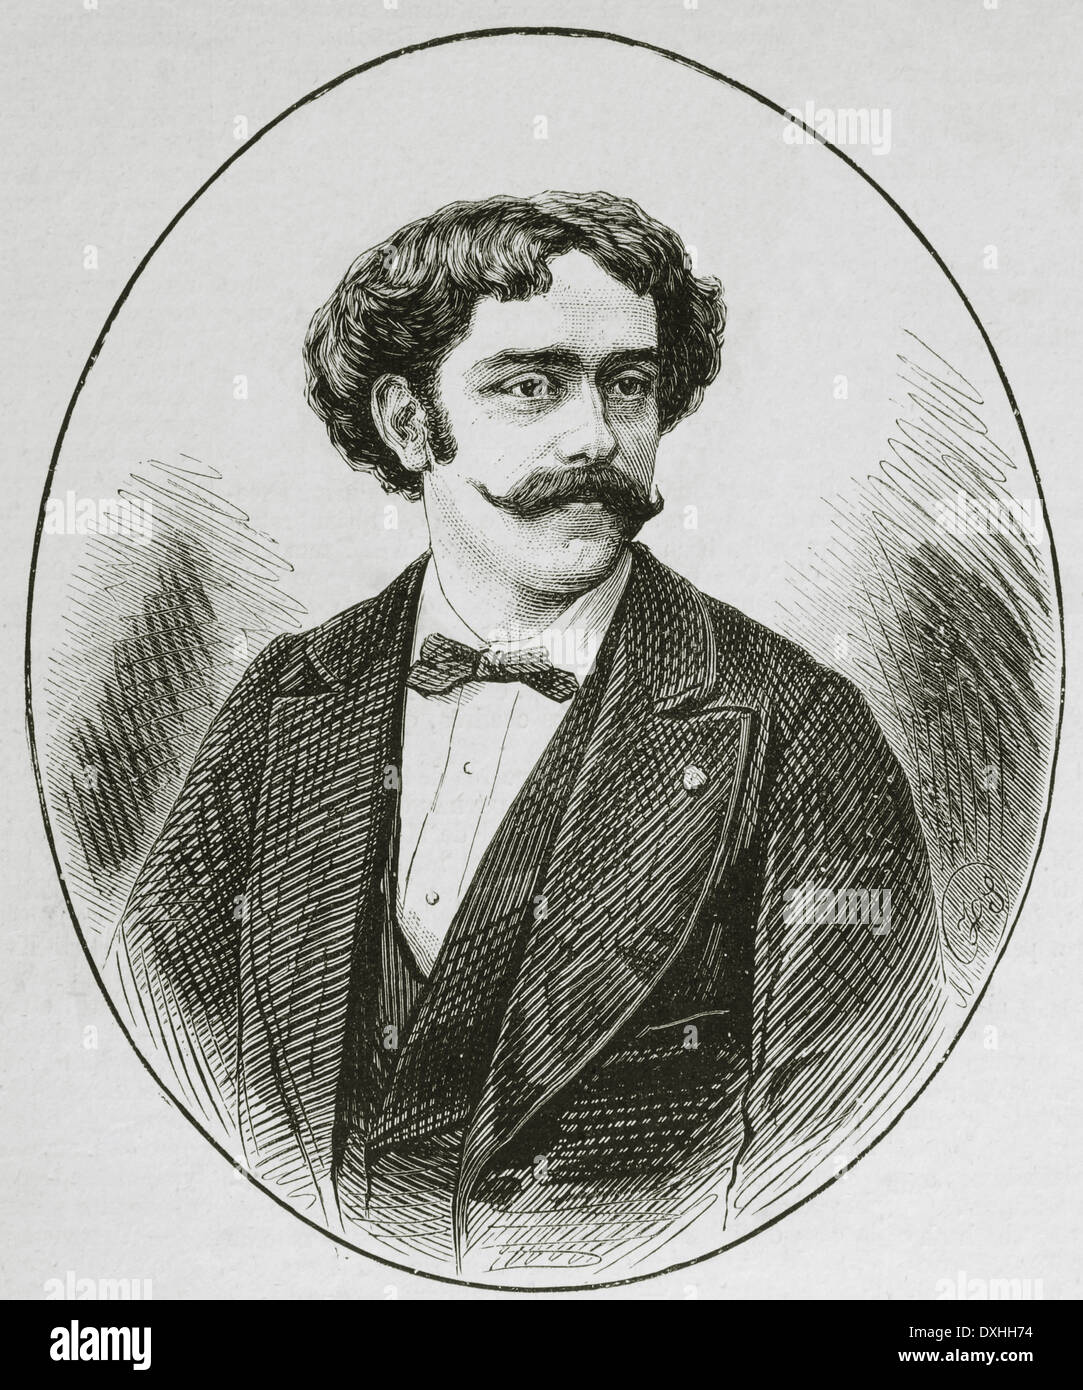 Pablo de Sarasate (1844-1908). Lo spagnolo violinista e compositore del periodo romantico. Incisione. Foto Stock